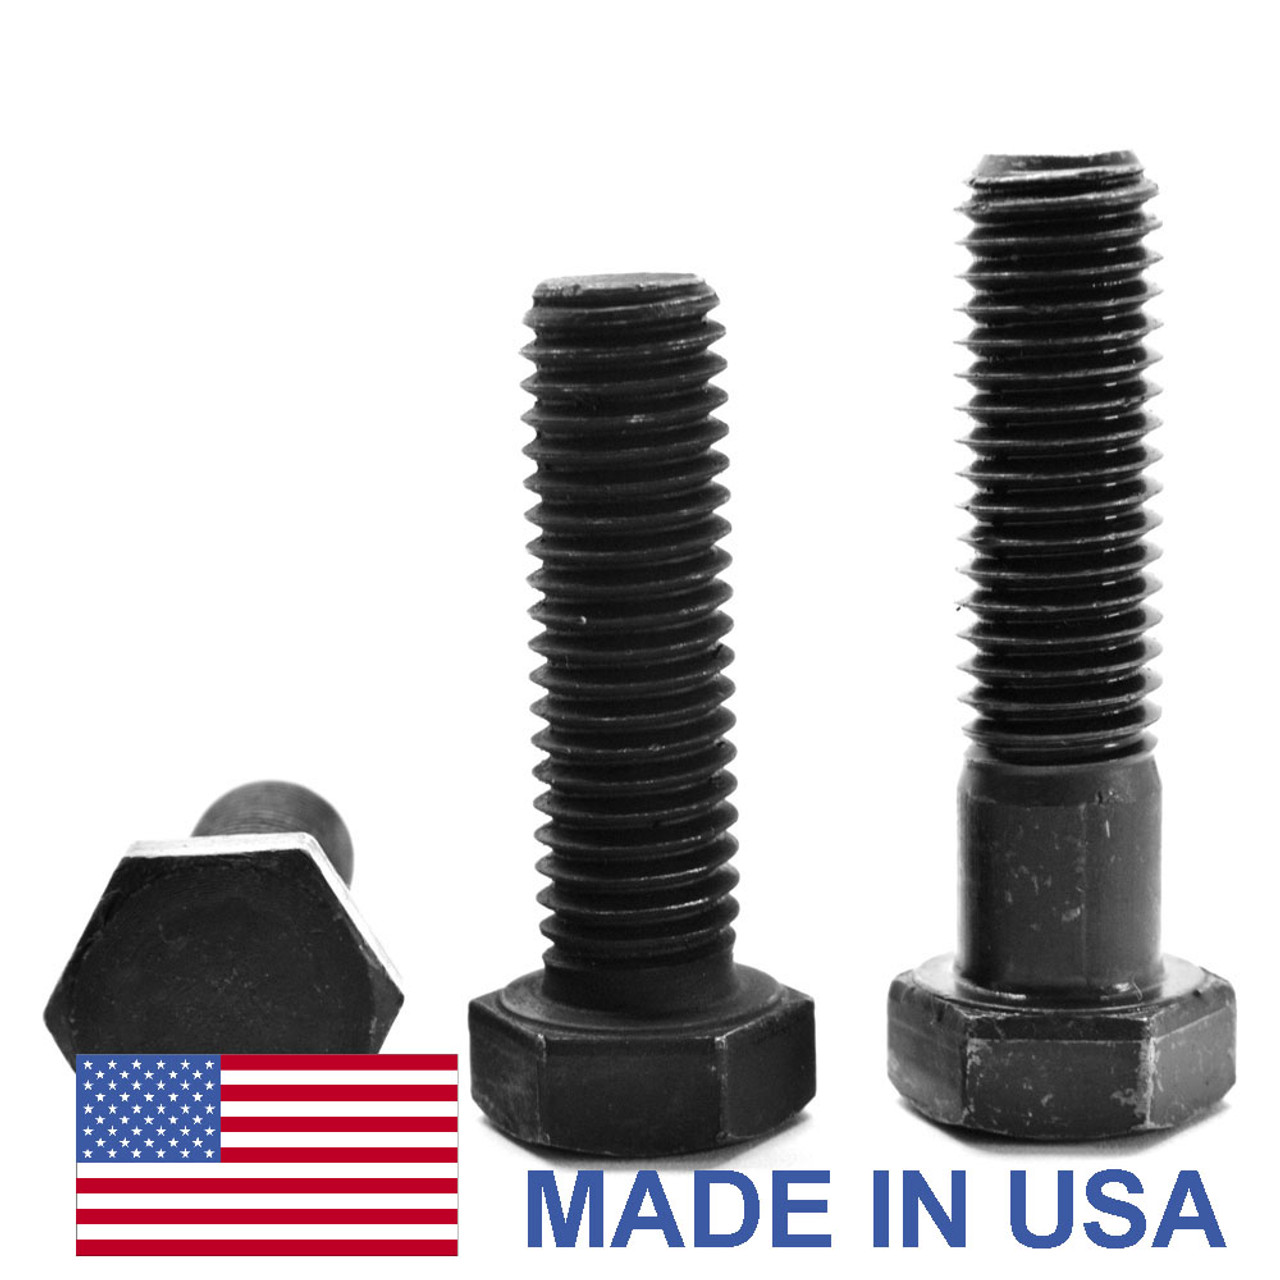 1"-14 x 9 1/2" (PT) UNS Thread Grade 5 Hex Cap Screw (Bolt) - USA Medium Carbon Steel Black Oxide